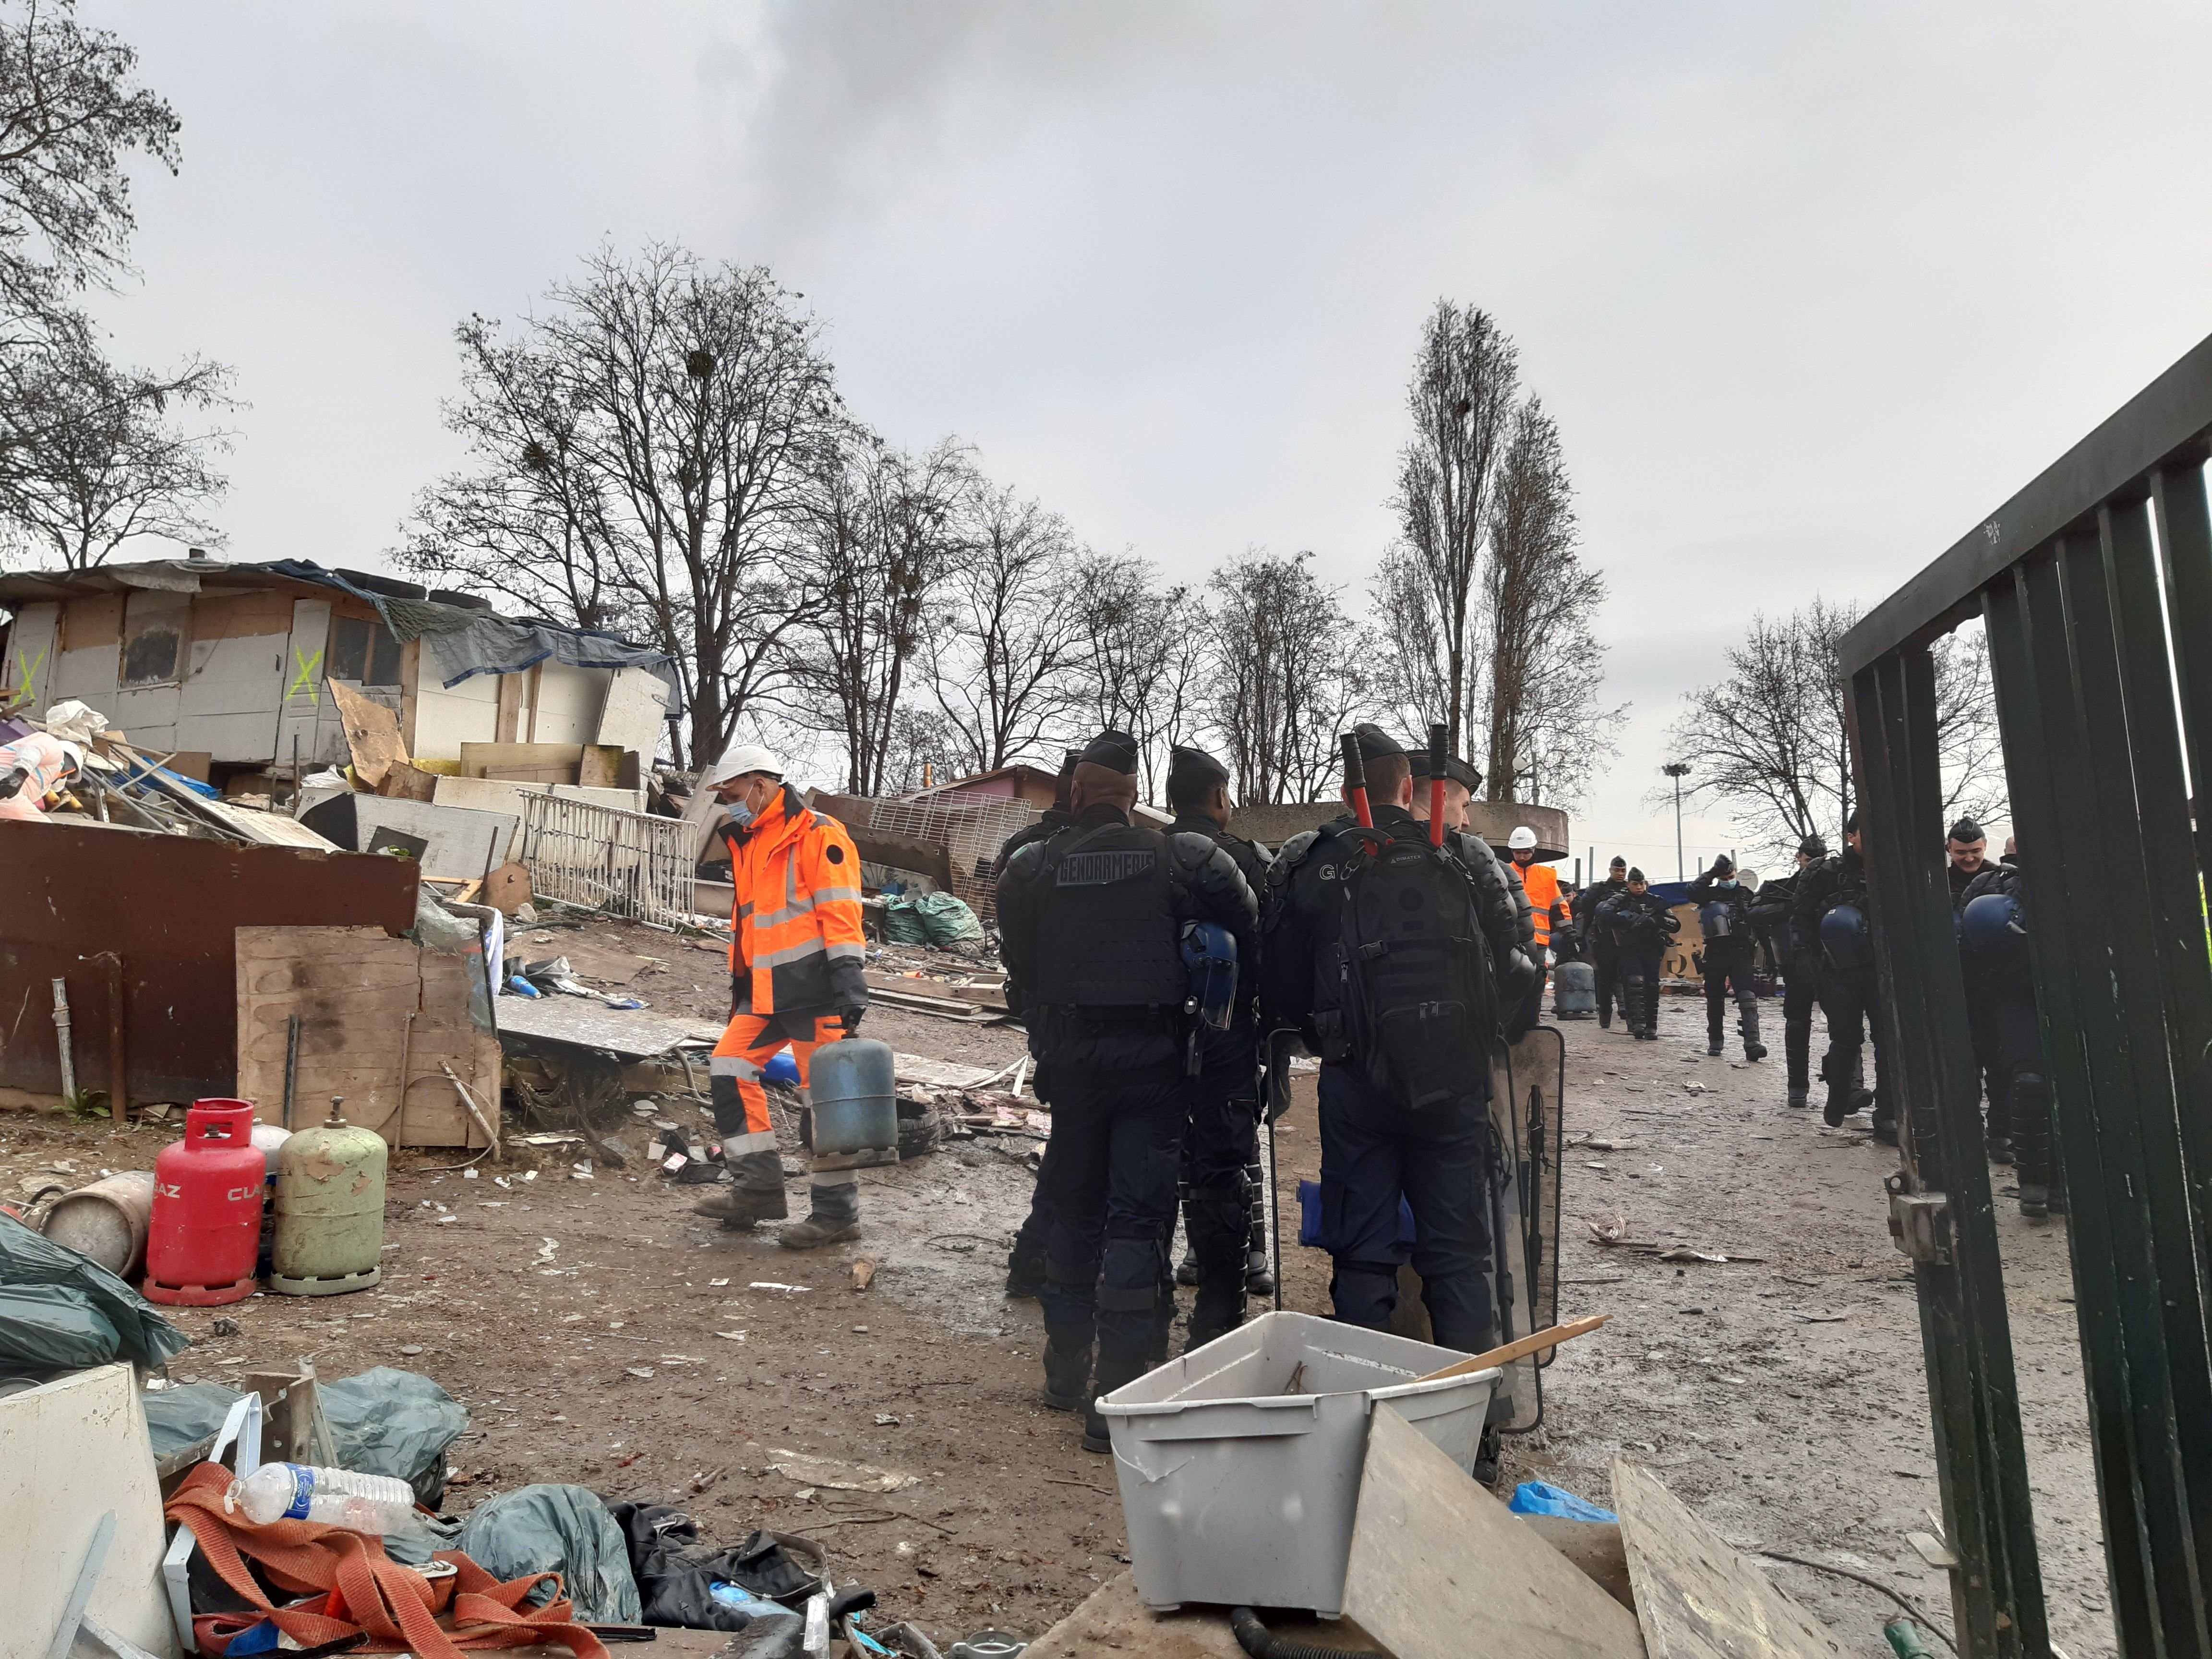 Antony (Hauts-de-Seine, 12 mars 2023. Le camp de Roms installé depuis 2017 sur un terrain entre l'A6 et l'A10 a été évacué. L'arrêté d'urgence pris par le maire vendredi avait été affiché la veille sur le campement. DR